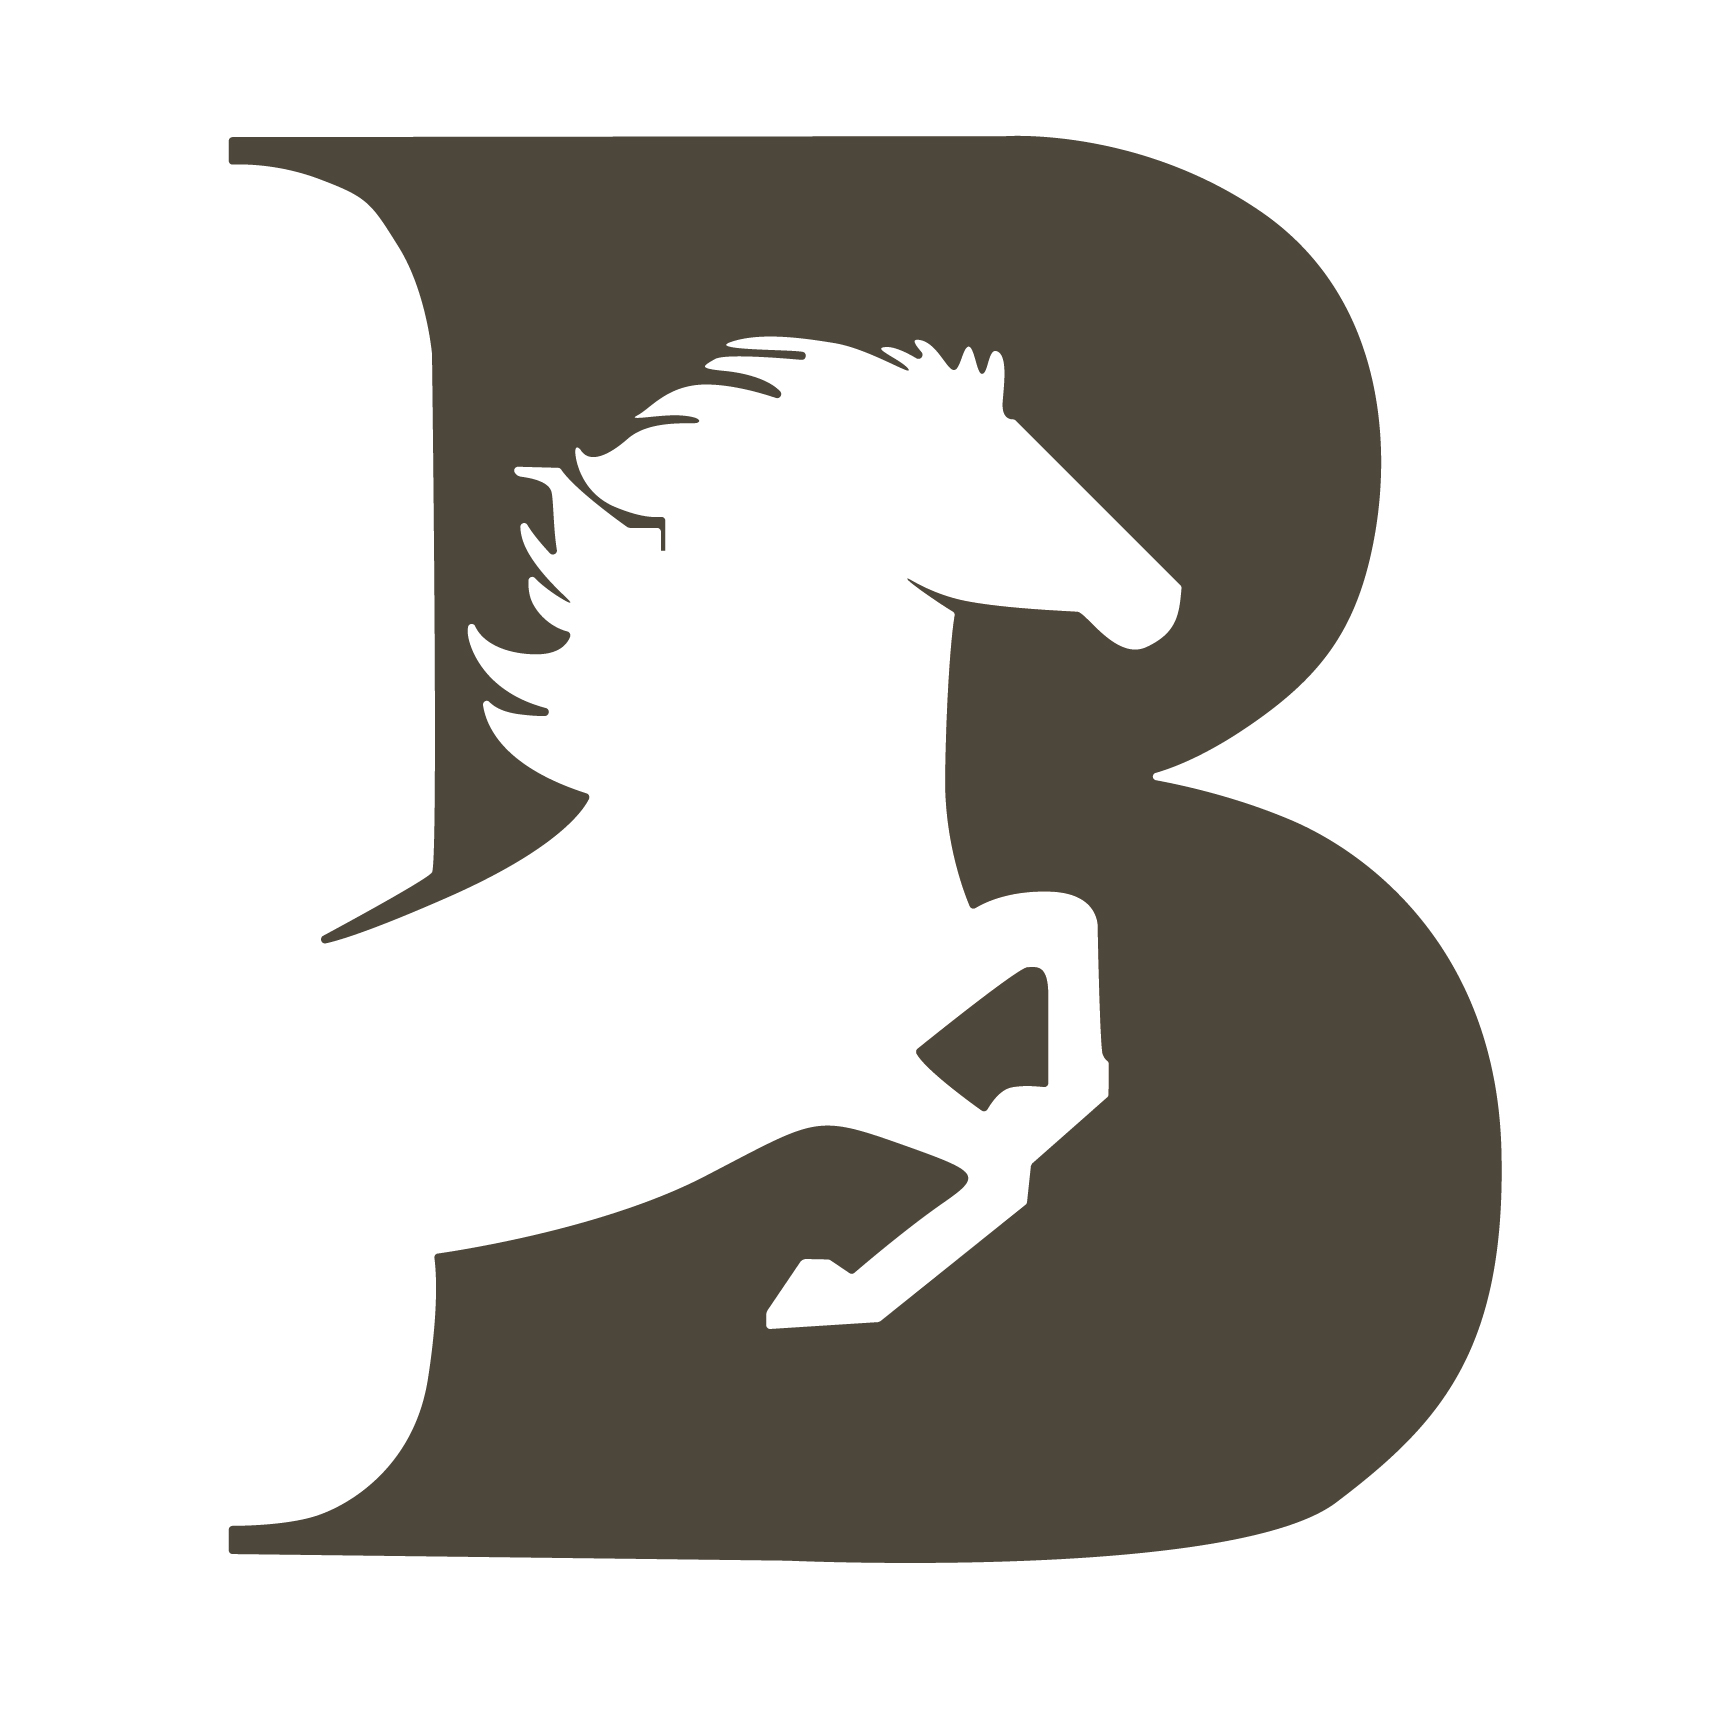 Boze logo